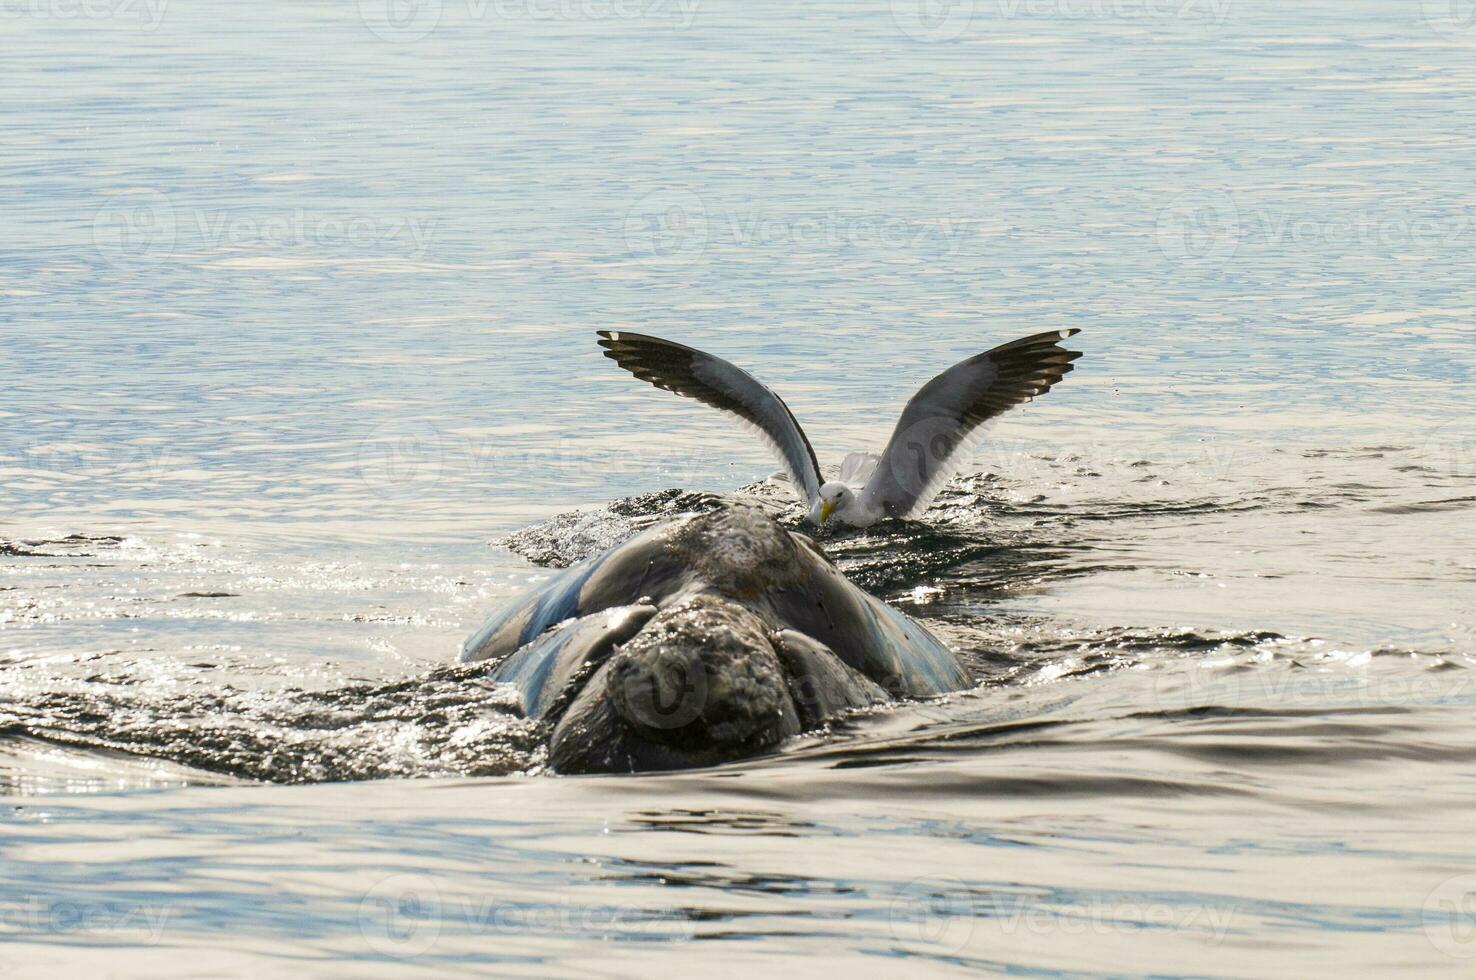 gaivota ardente certo baleia, Península valdes,, Patagônia, Argentina foto